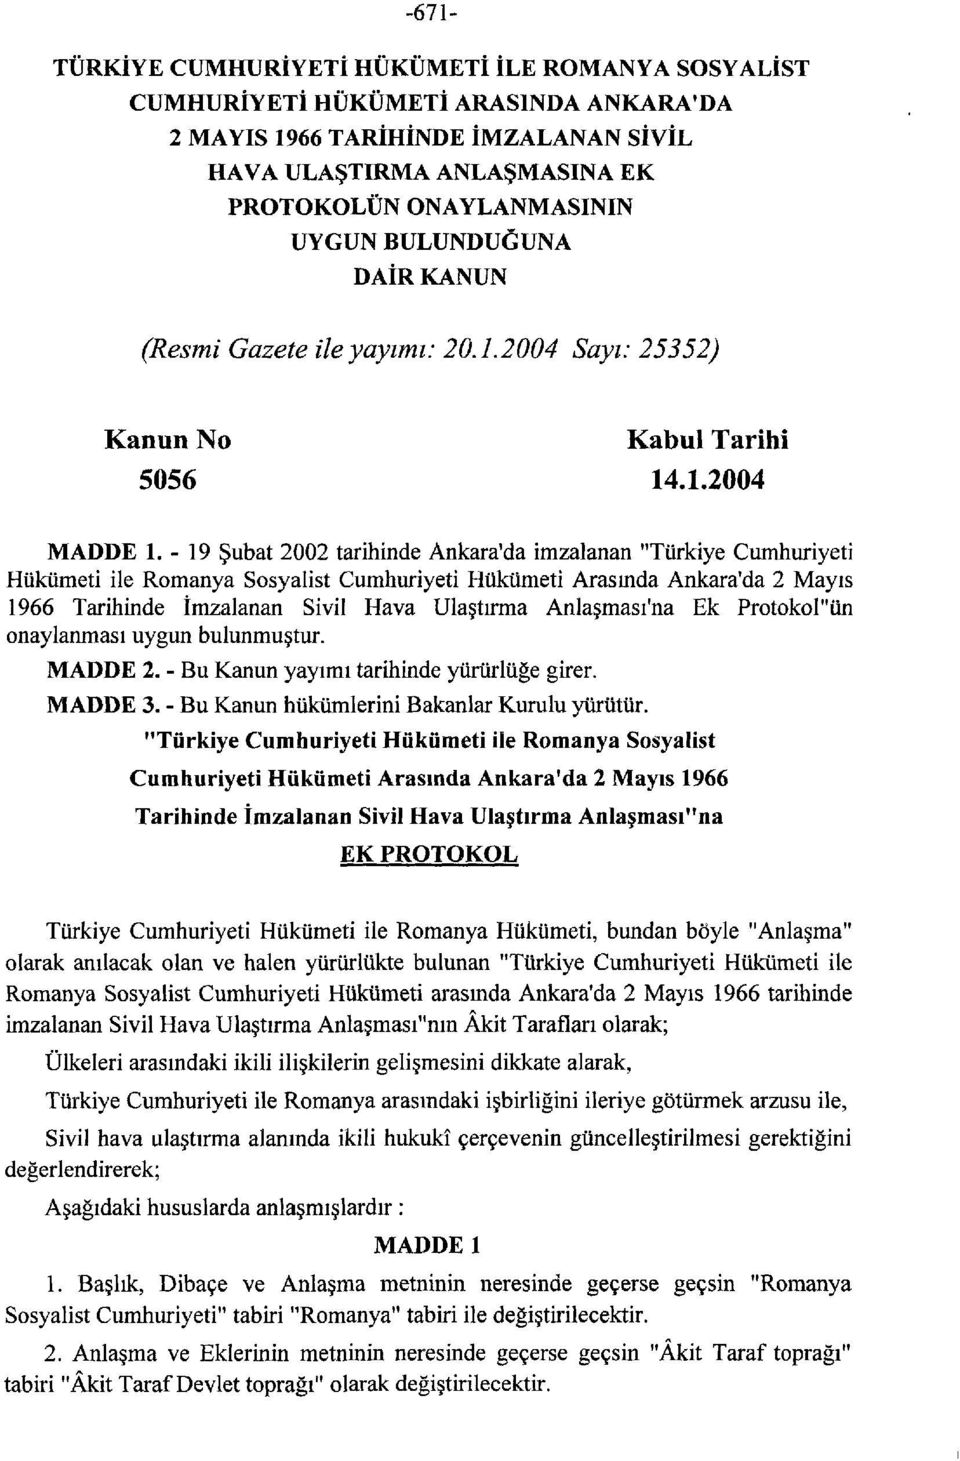 -19 Şubat 2002 tarihinde Ankara'da imzalanan "Türkiye Cumhuriyeti Hükümeti ile Romanya Sosyalist Cumhuriyeti Hükümeti Arasında Ankara'da 2 Mayıs 1966 Tarihinde İmzalanan Sivil Hava Ulaştırma